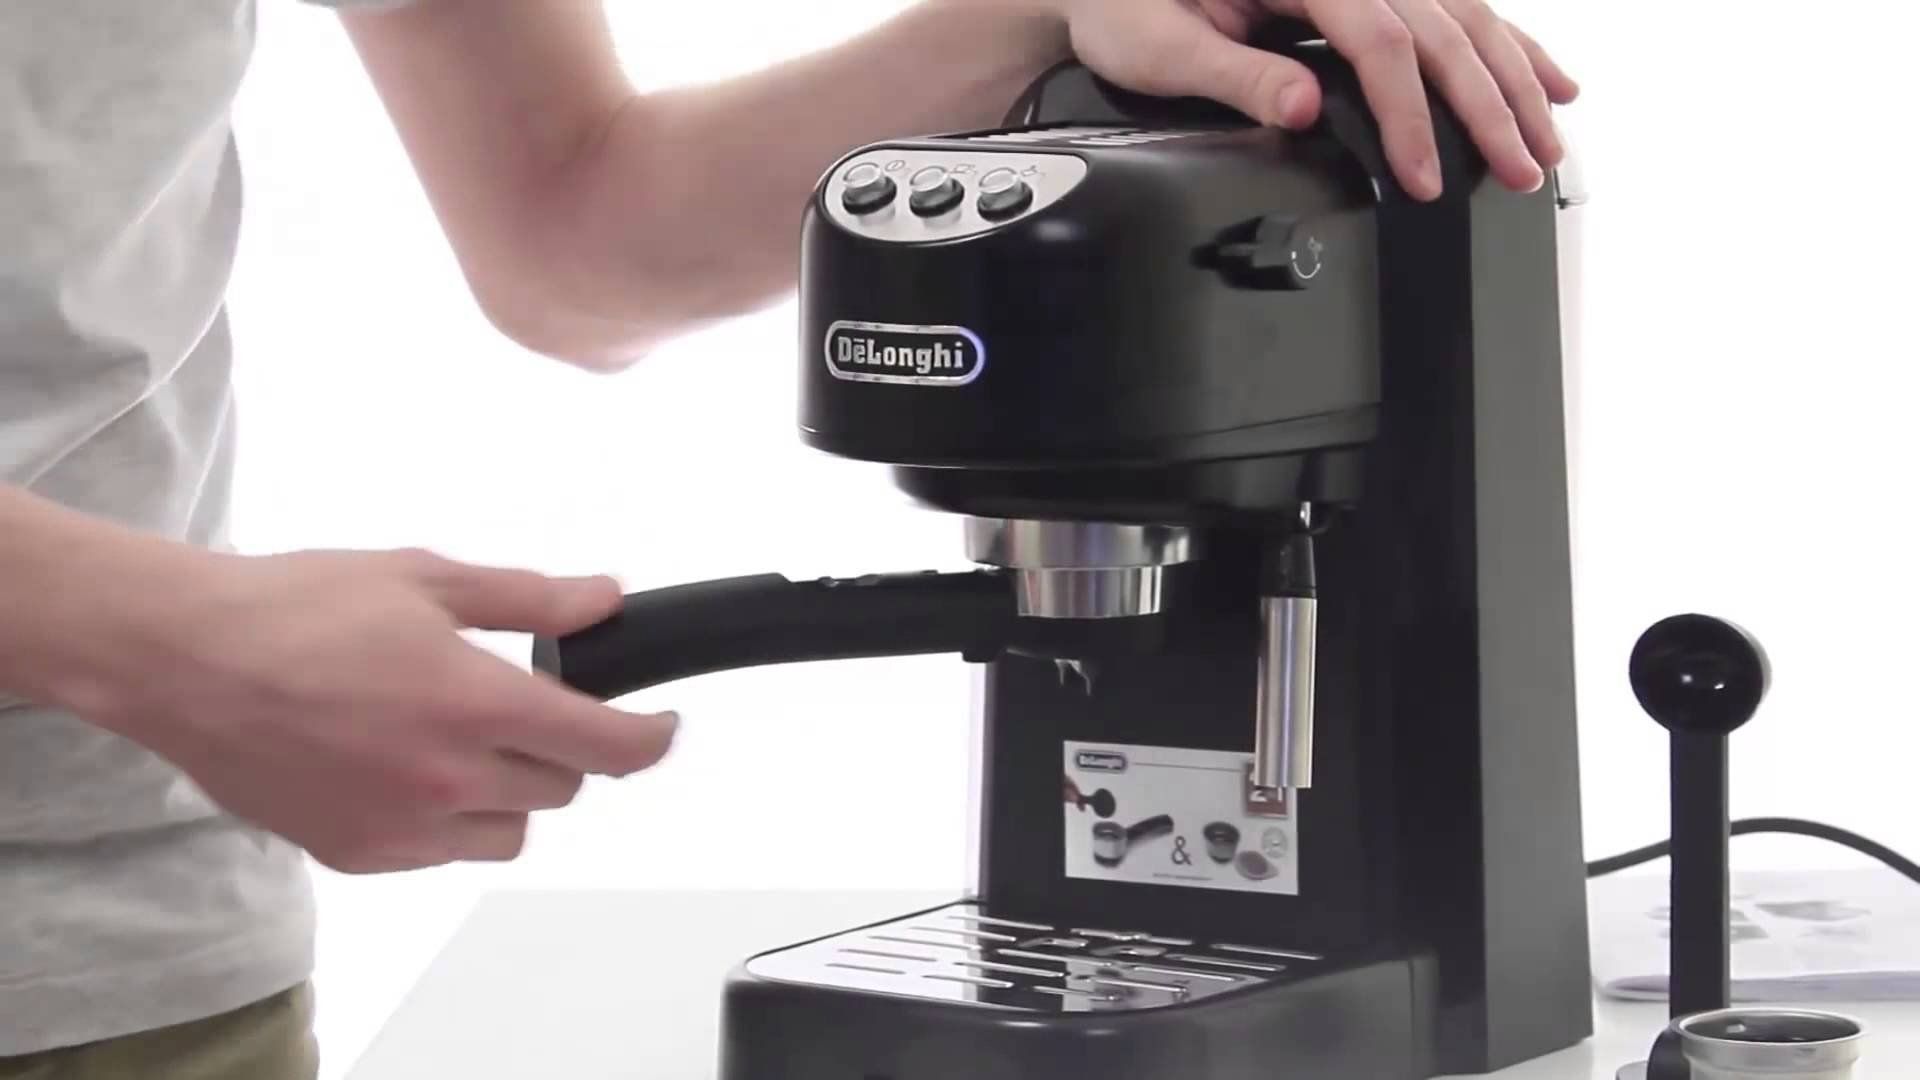 Mesin kopi De'Longhi terbaik untuk rumah dan pejabat pada tahun 2020